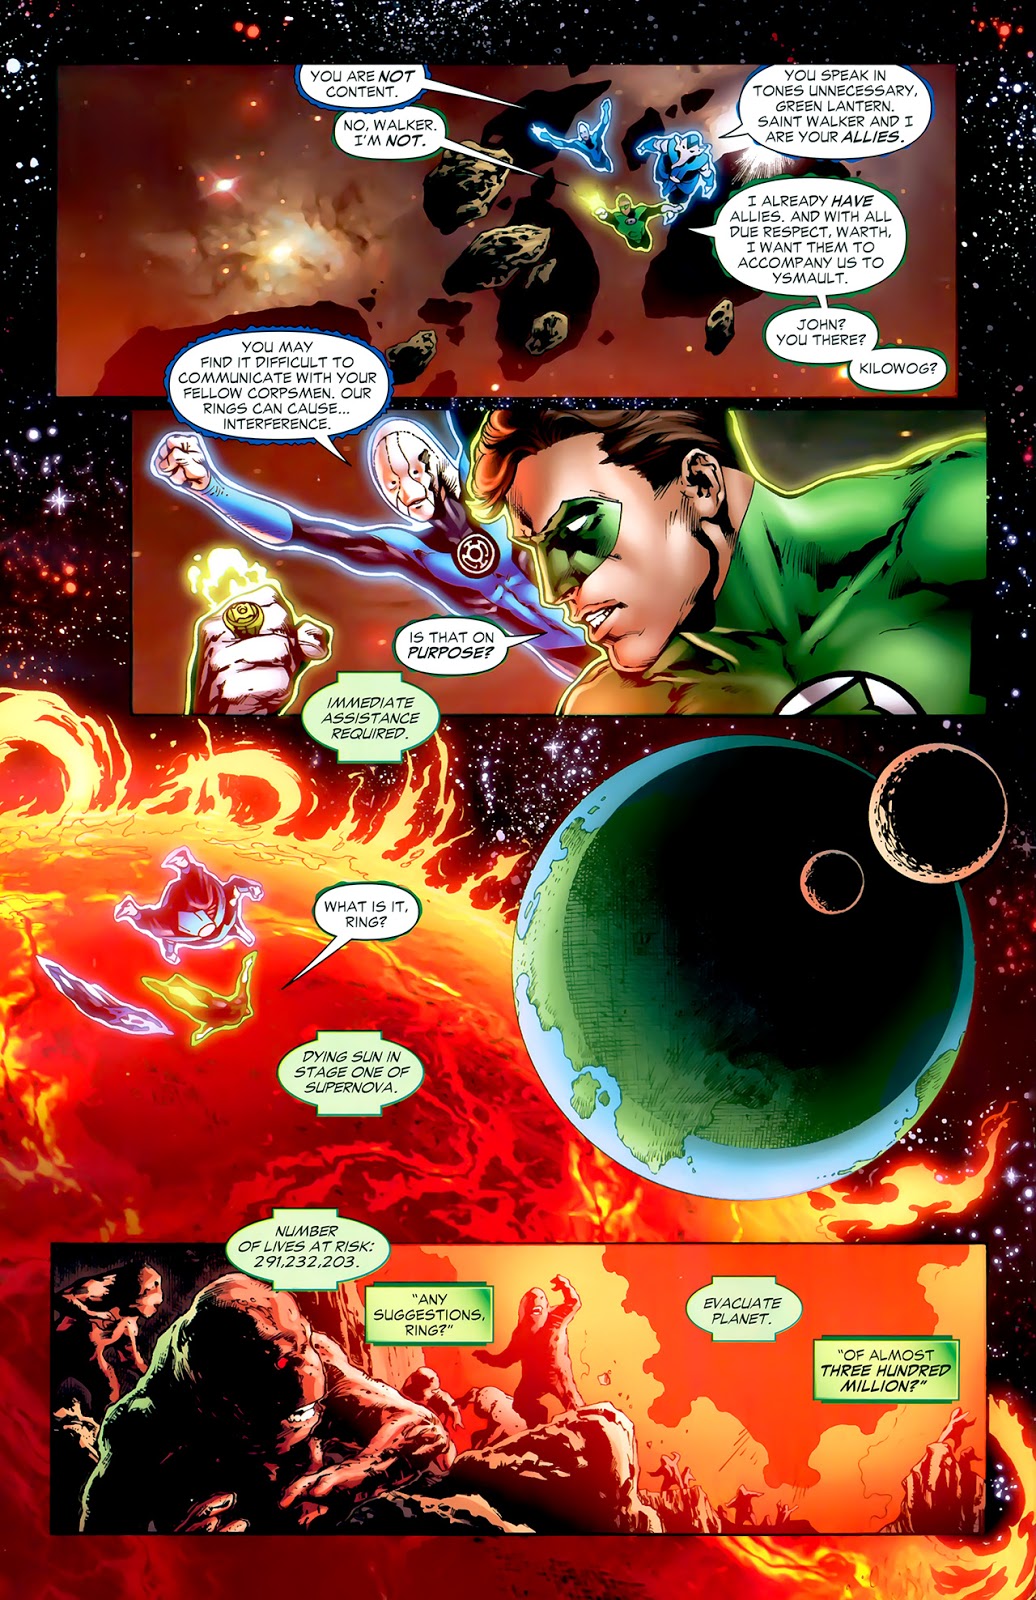 From – Green Lantern Vol. 4 #36